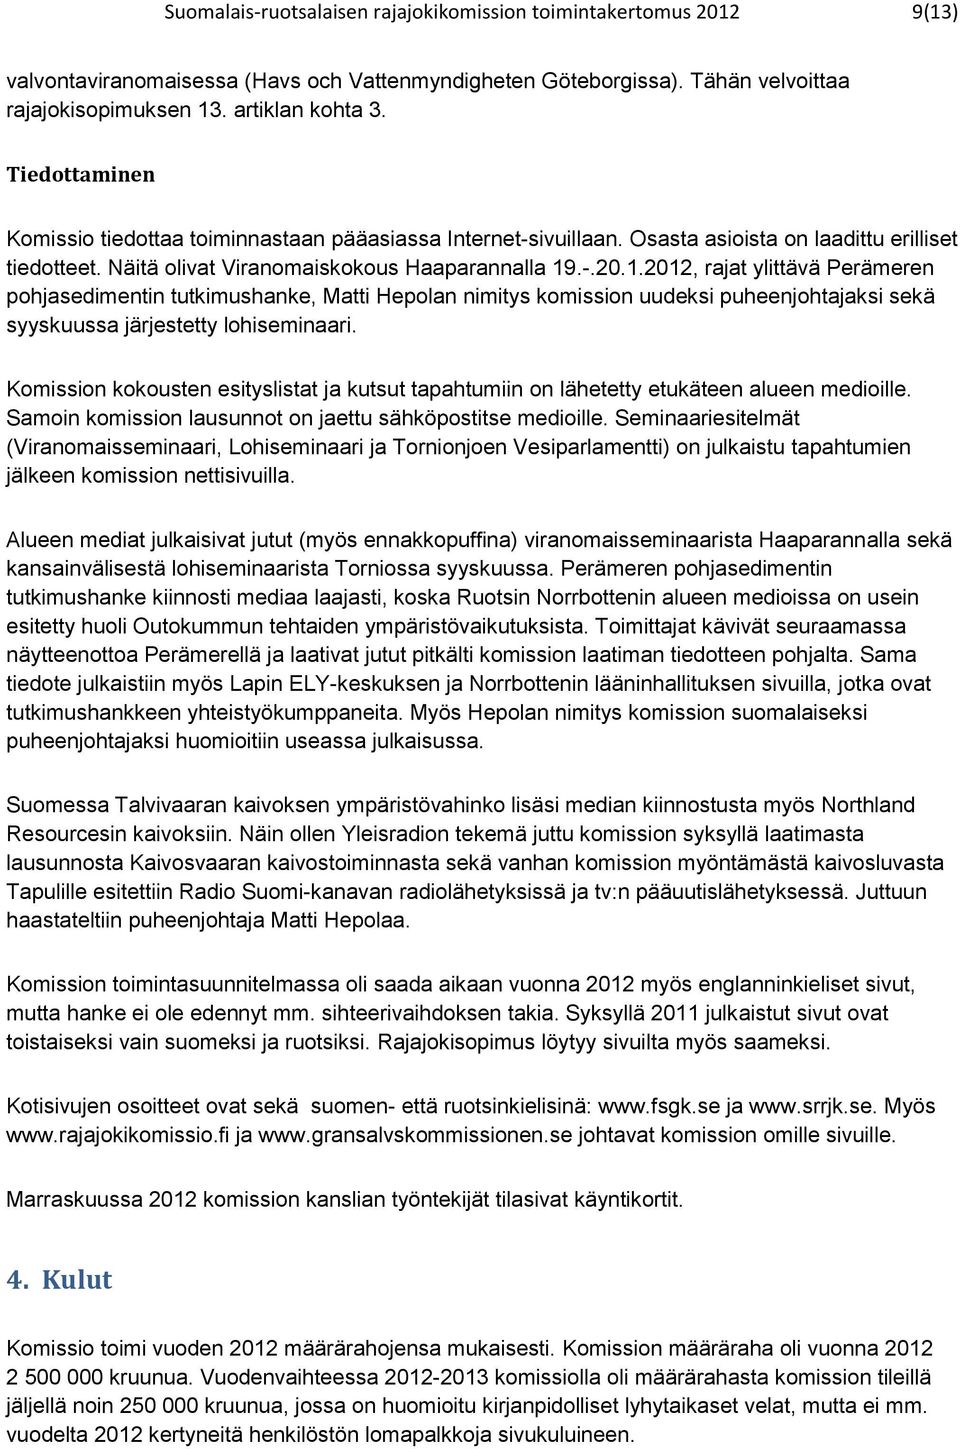 .-.20.1.2012, rajat ylittävä Perämeren pohjasedimentin tutkimushanke, Matti Hepolan nimitys komission uudeksi puheenjohtajaksi sekä syyskuussa järjestetty lohiseminaari.